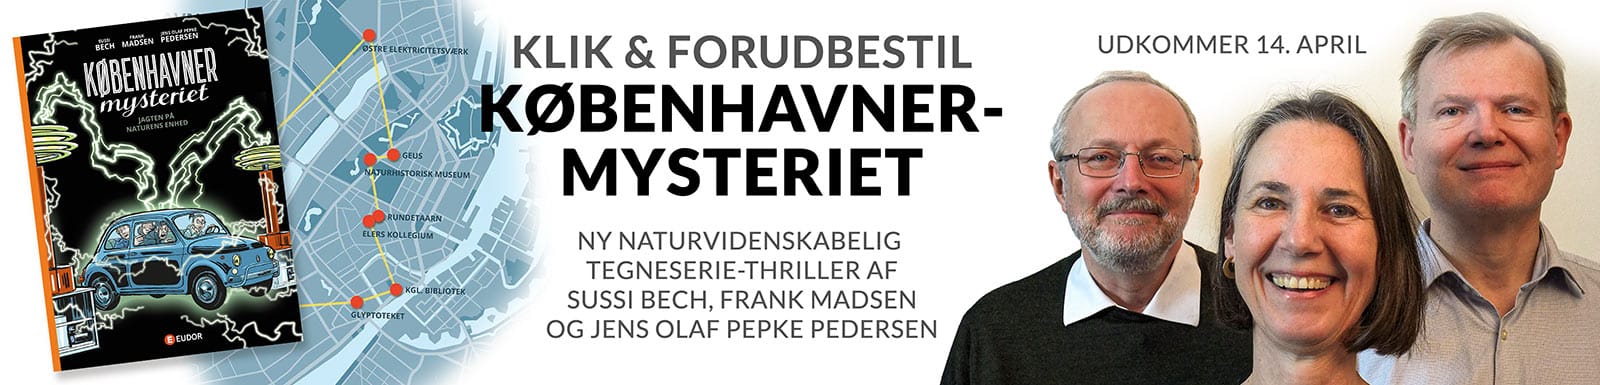 Klik & forudbestil KØBENHAVNERMYSTERIET - ny naturvidenskabelig tegneserie-thriller af Sussi Bech, Frank Madsen og Jens Olaf Pepke Pedersen